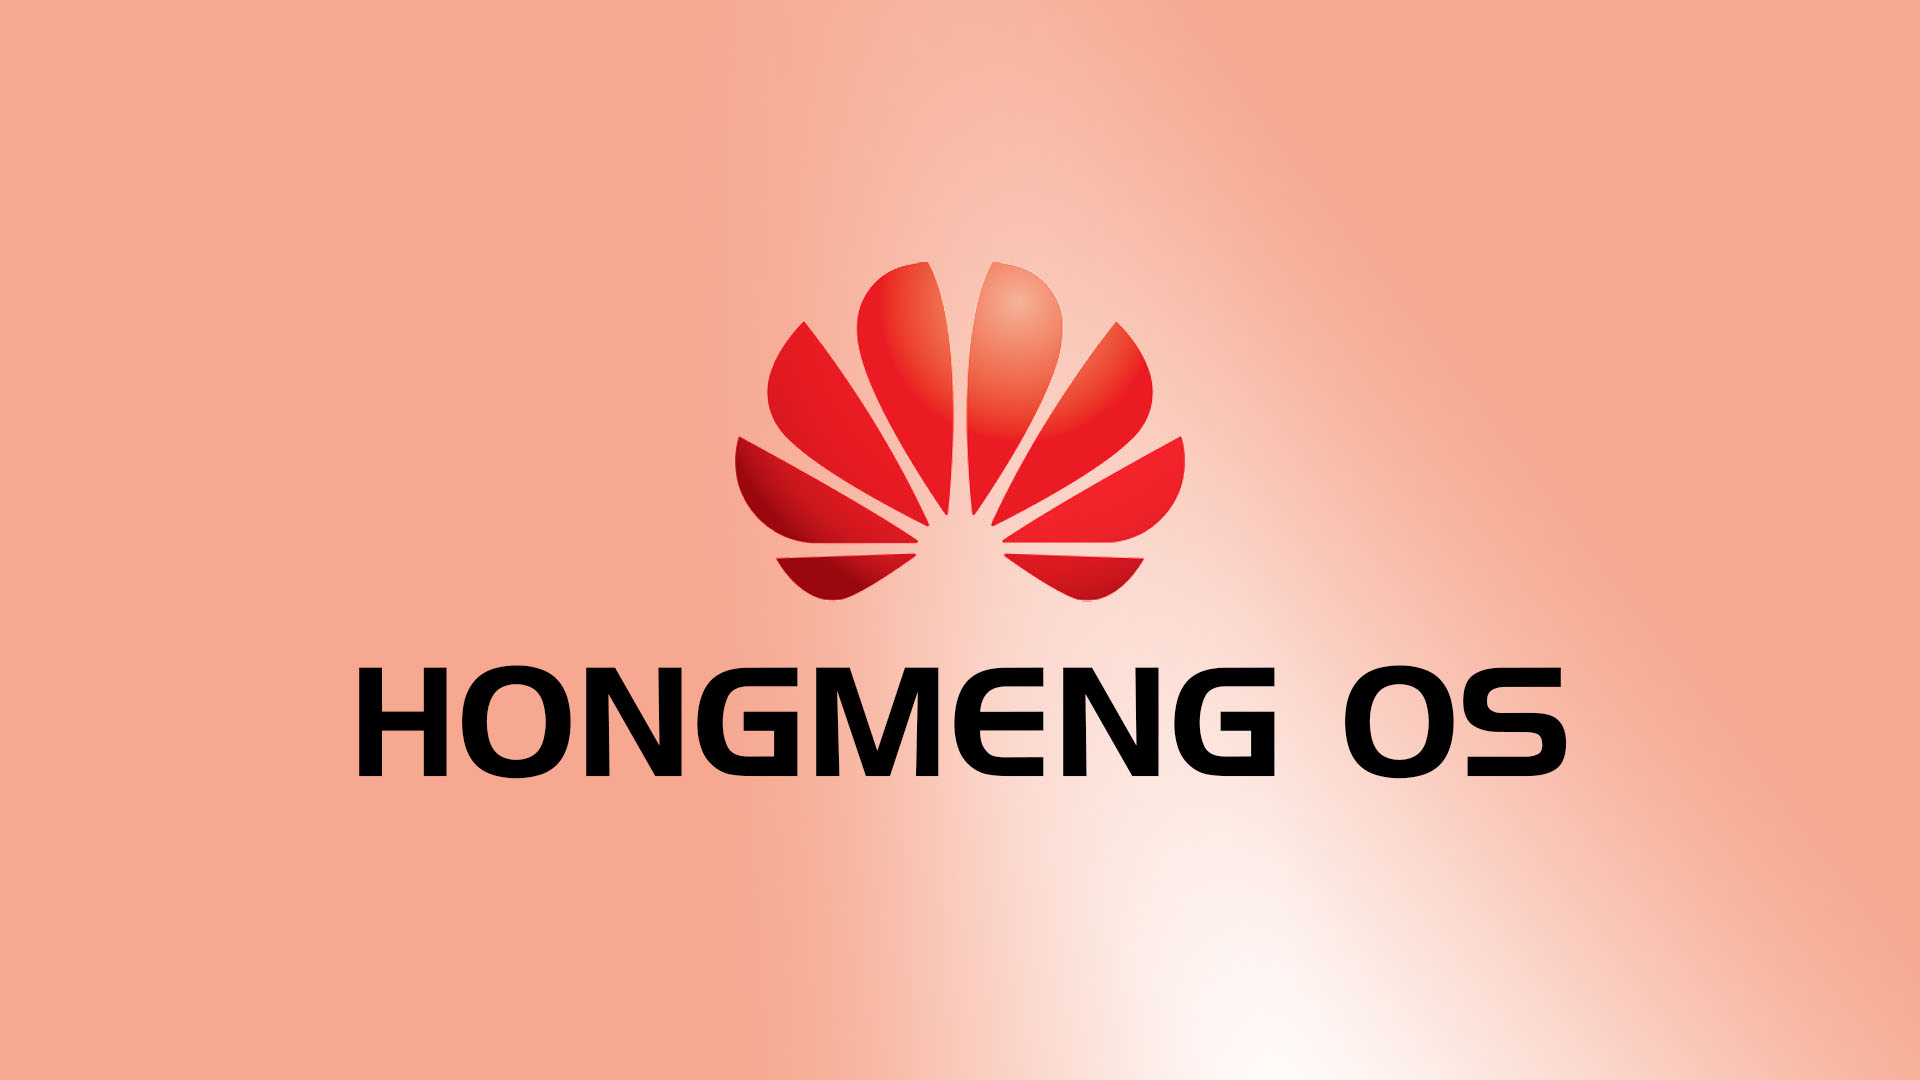 Huawei'nin geliştirdiği HongMeng işletim sistemi önümüzdeki ay tanıtılabilir